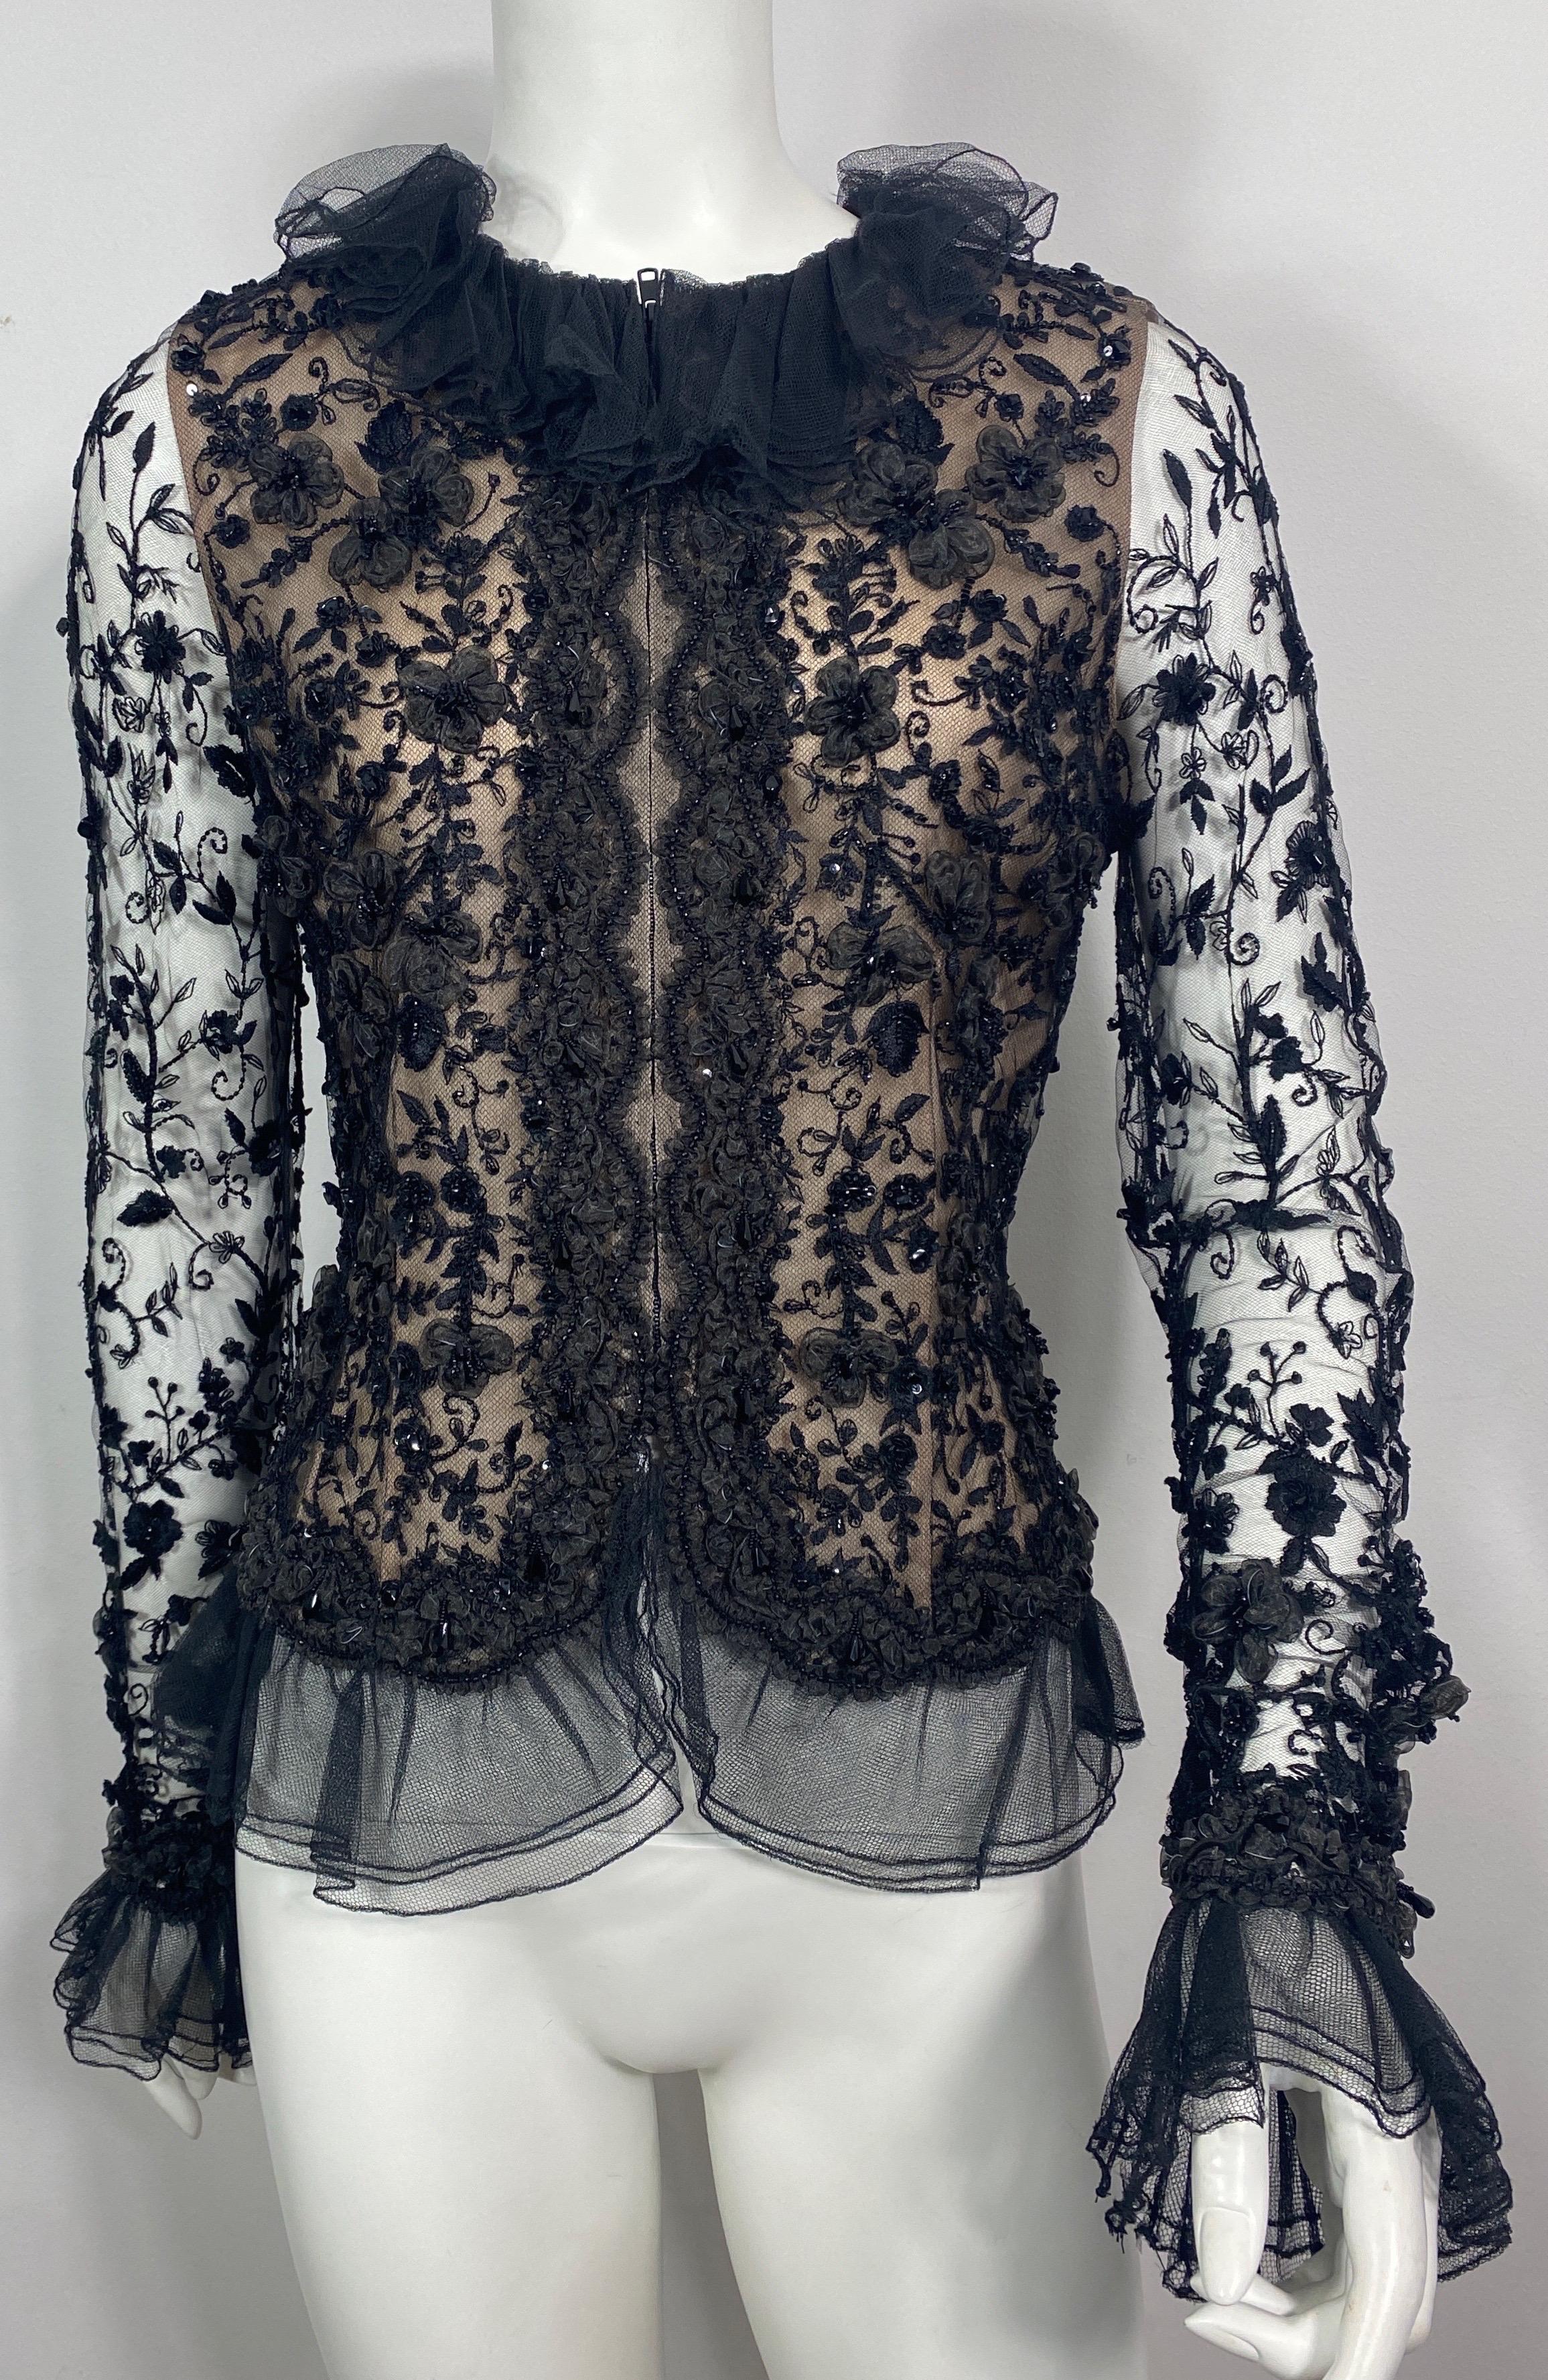 Oscar de La Renta 1980's Black Lace Embellished Beaded Top Jacket-Size 10 Dieses Top kann als Jacke getragen werden, ist aus einer schwarzen Spitze Mesh, die stark in Perlen und Seide wie Blumenapplikationen verziert ist, ist das Mieder der Jacke in